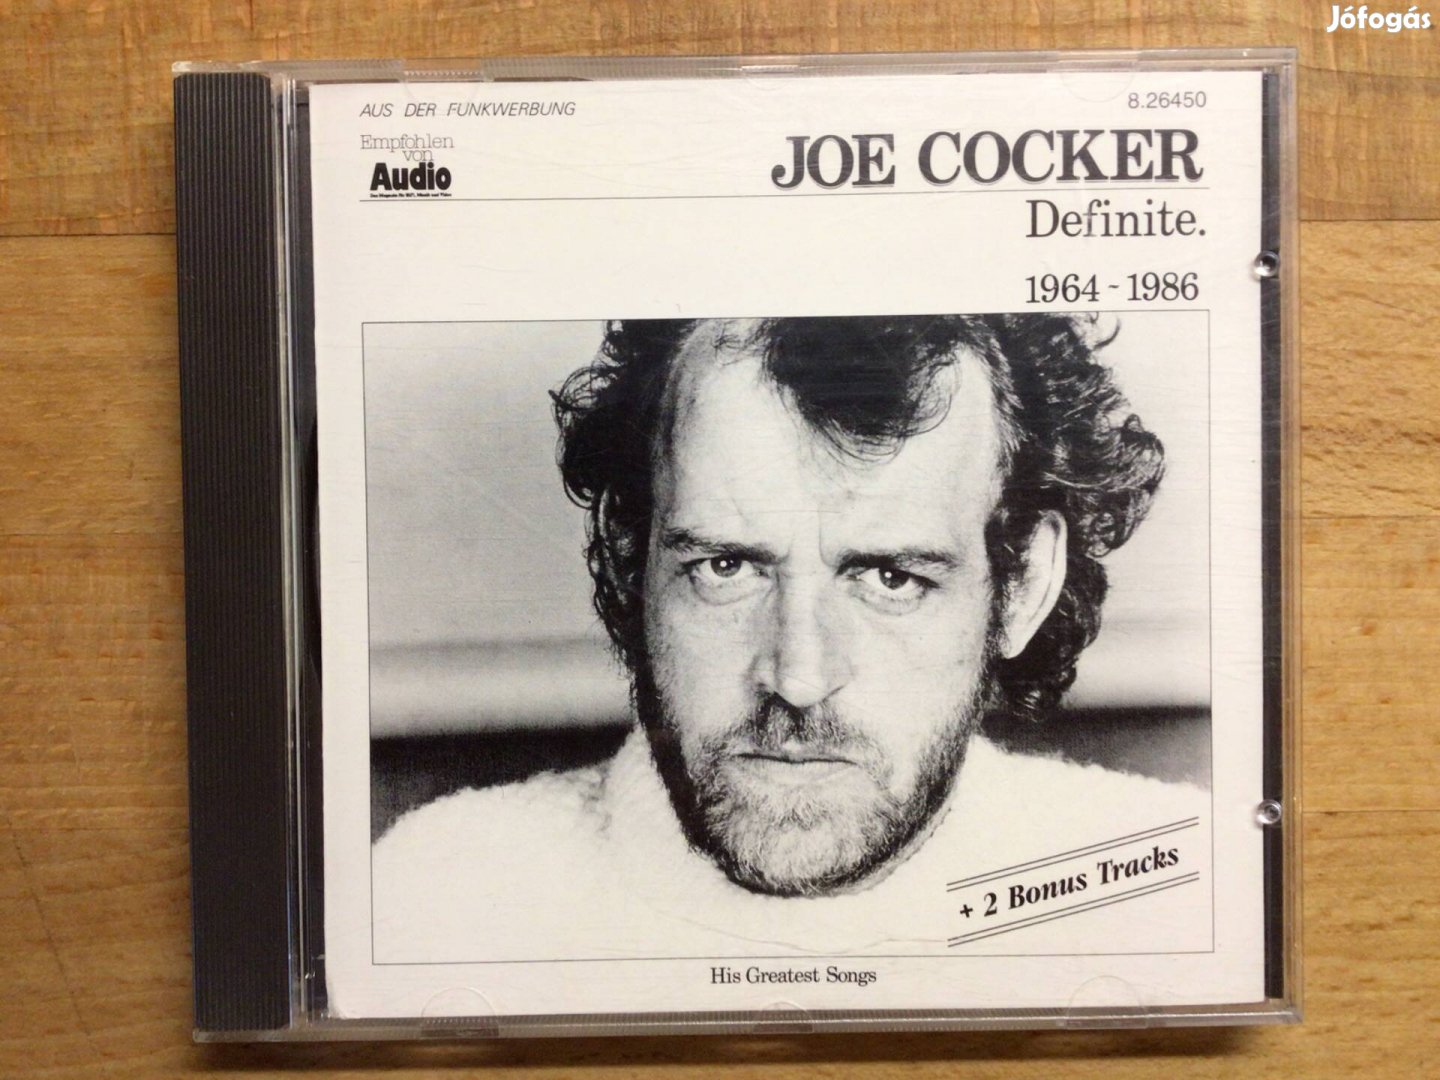 Joe Cocker- Definite 1964-1986